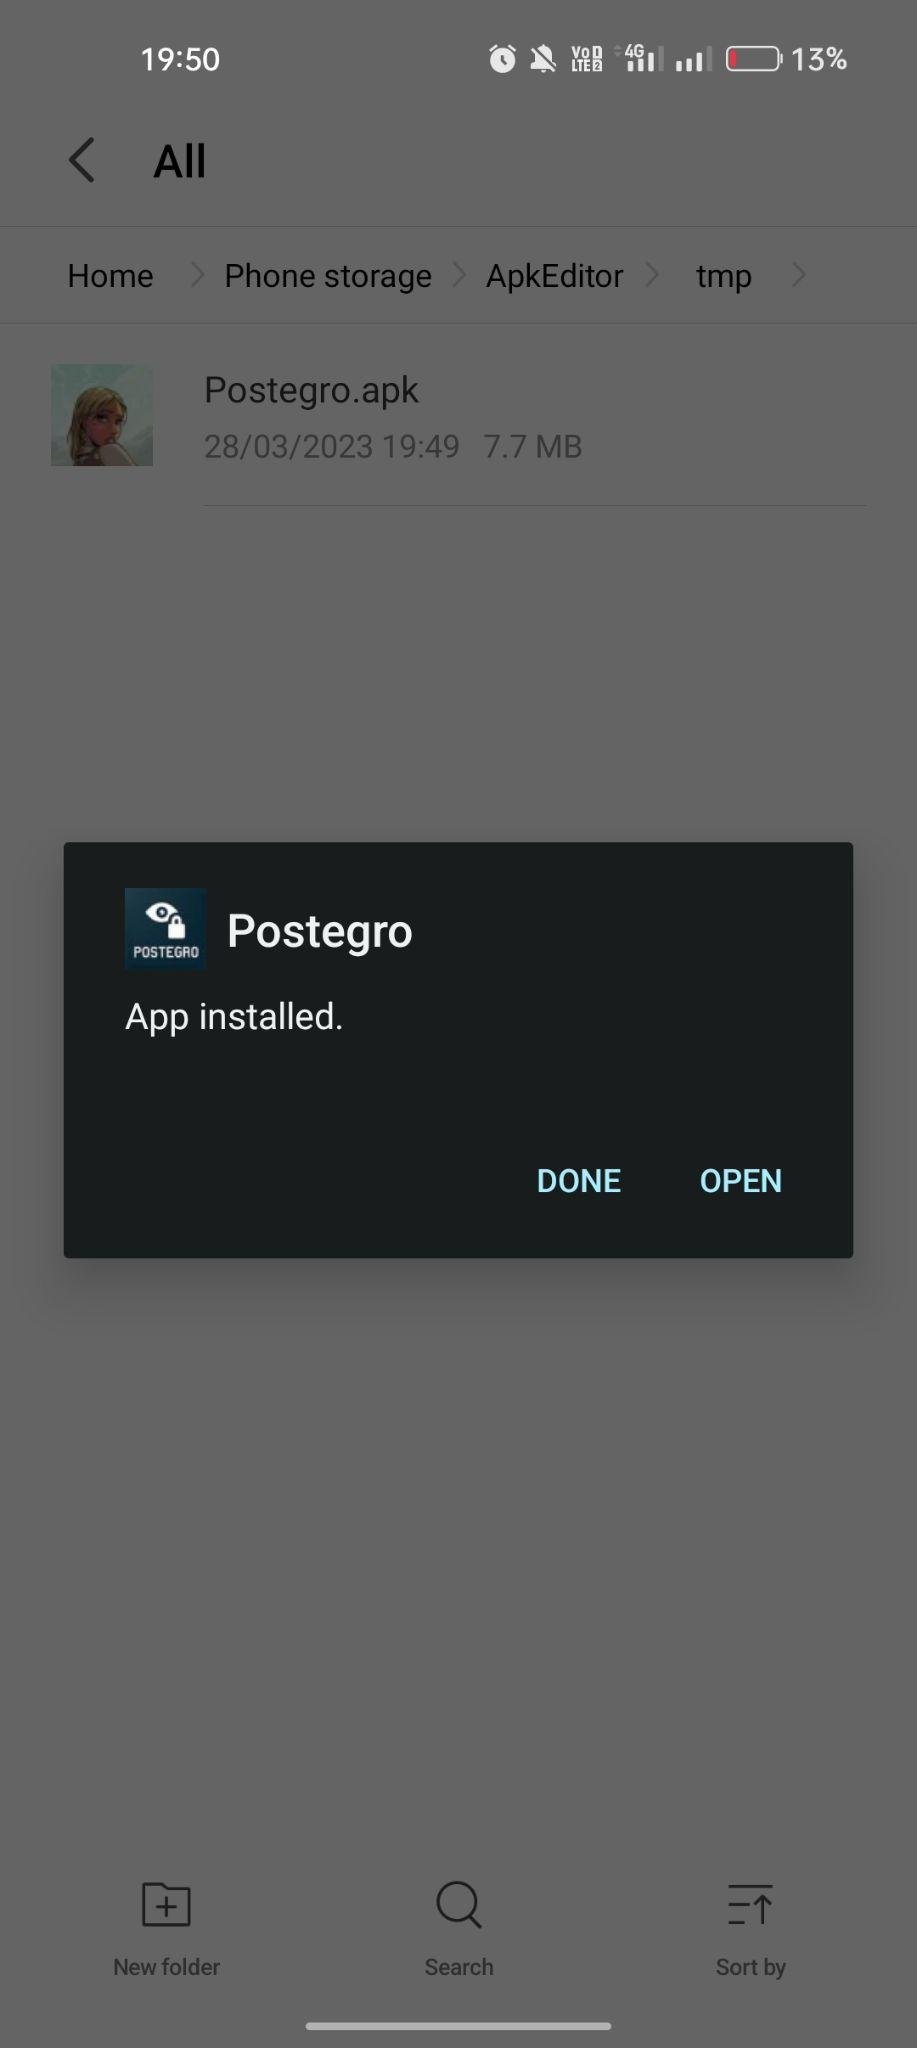 Postegro apk installed